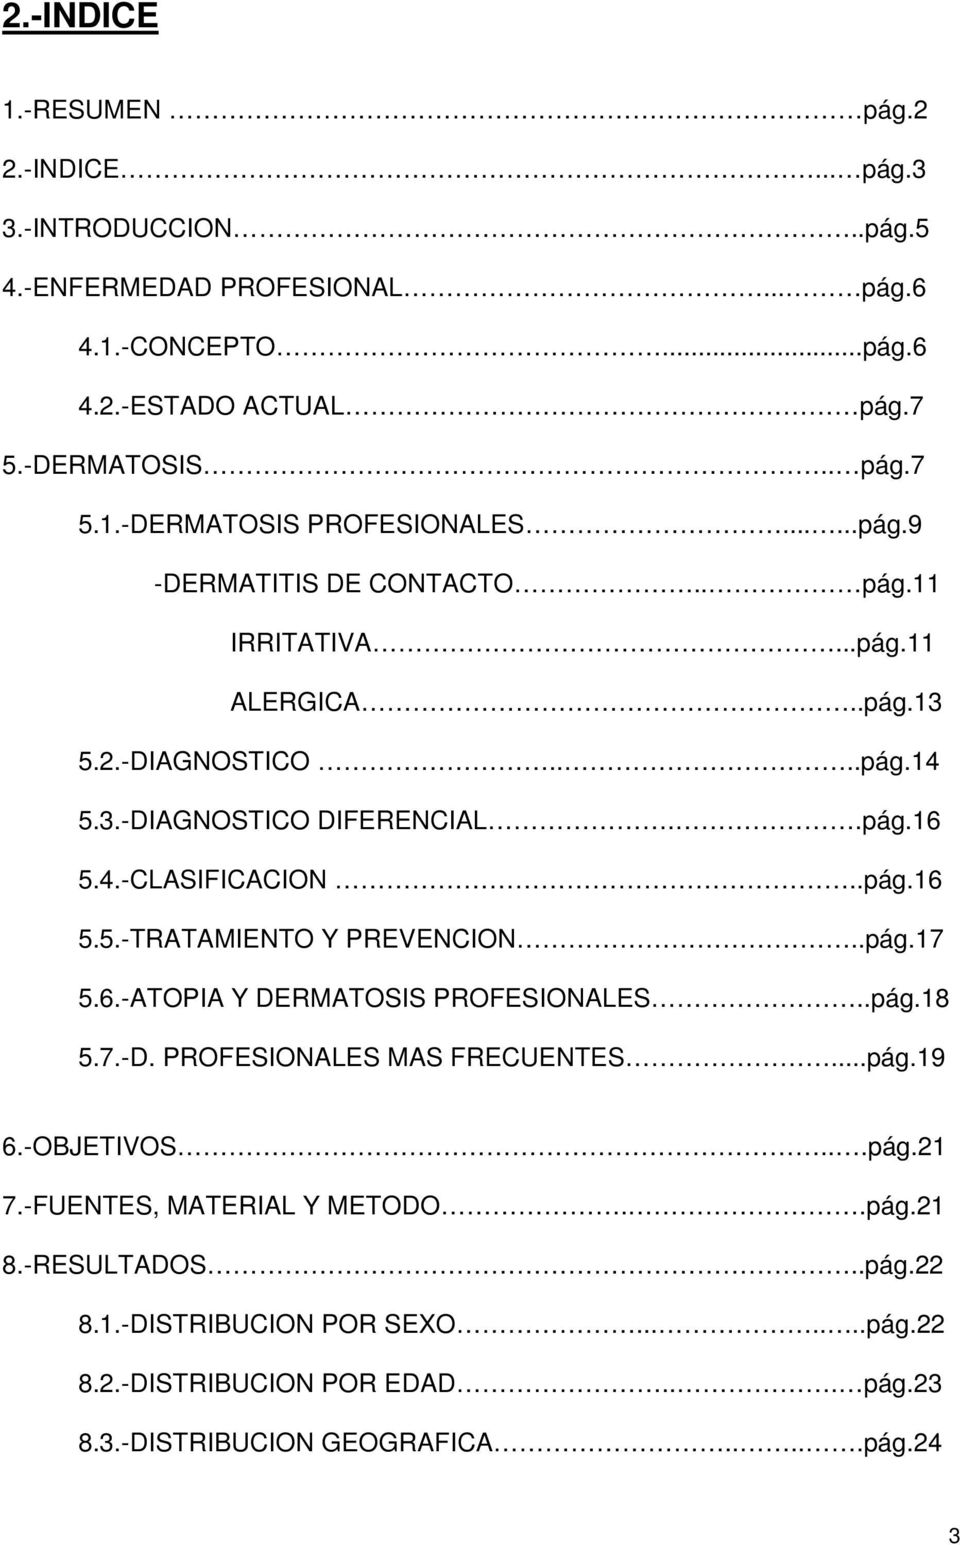 .pág.17 5.6.-ATOPIA Y DERMATOSIS PROFESIONALES..pág.18 5.7.-D. PROFESIONALES MAS FRECUENTES...pág.19 6.-OBJETIVOS...pág.21 7.-FUENTES, MATERIAL Y METODO..pág.21 8.-RESULTADOS.